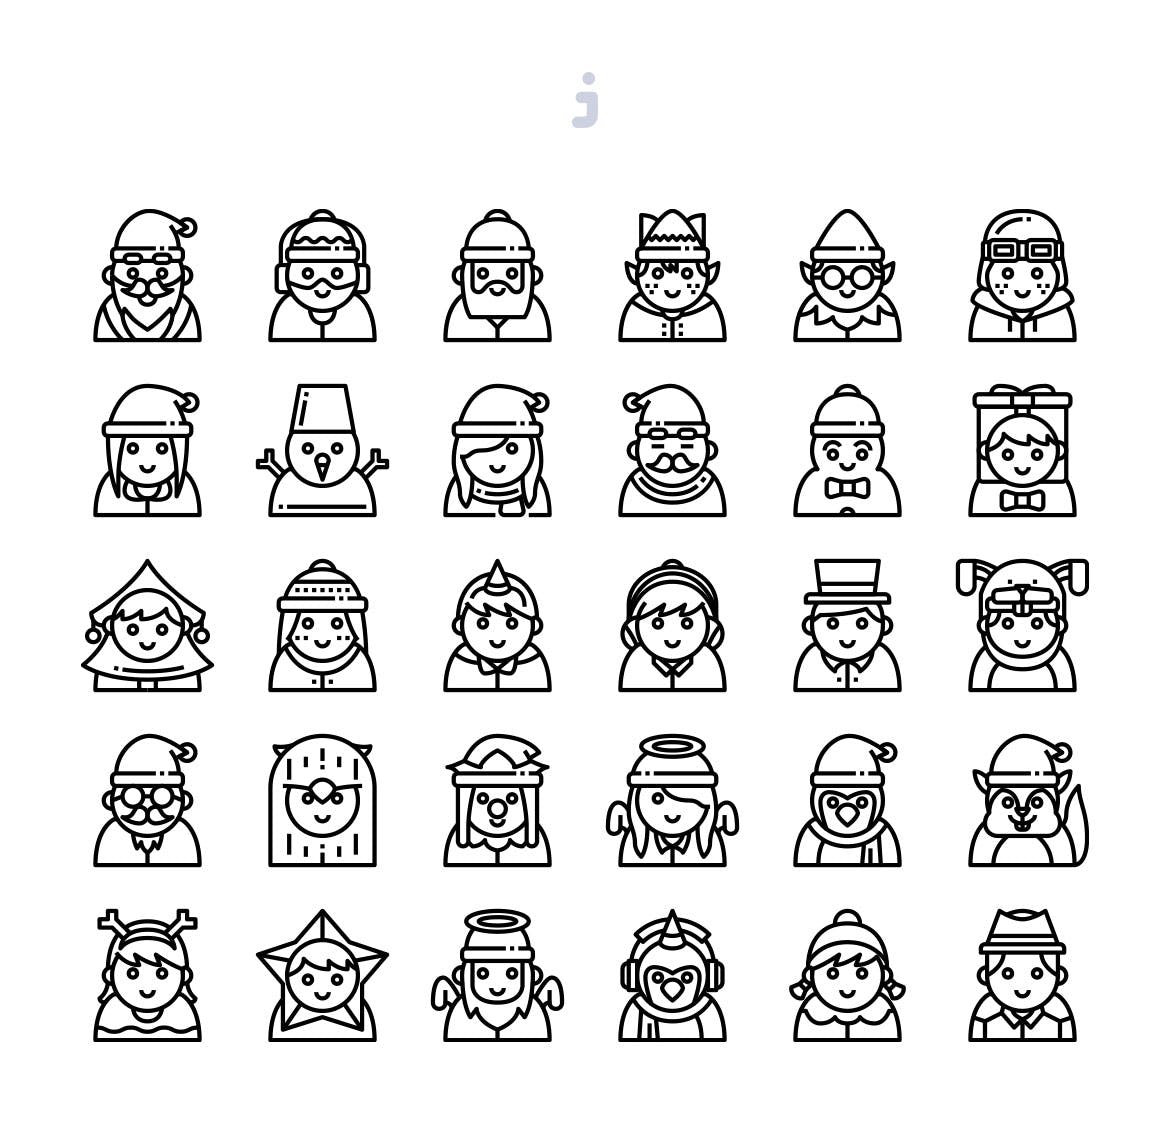 30枚圣诞节彩色人物头像图标 30 Christmas Avatar Icons插图(2)